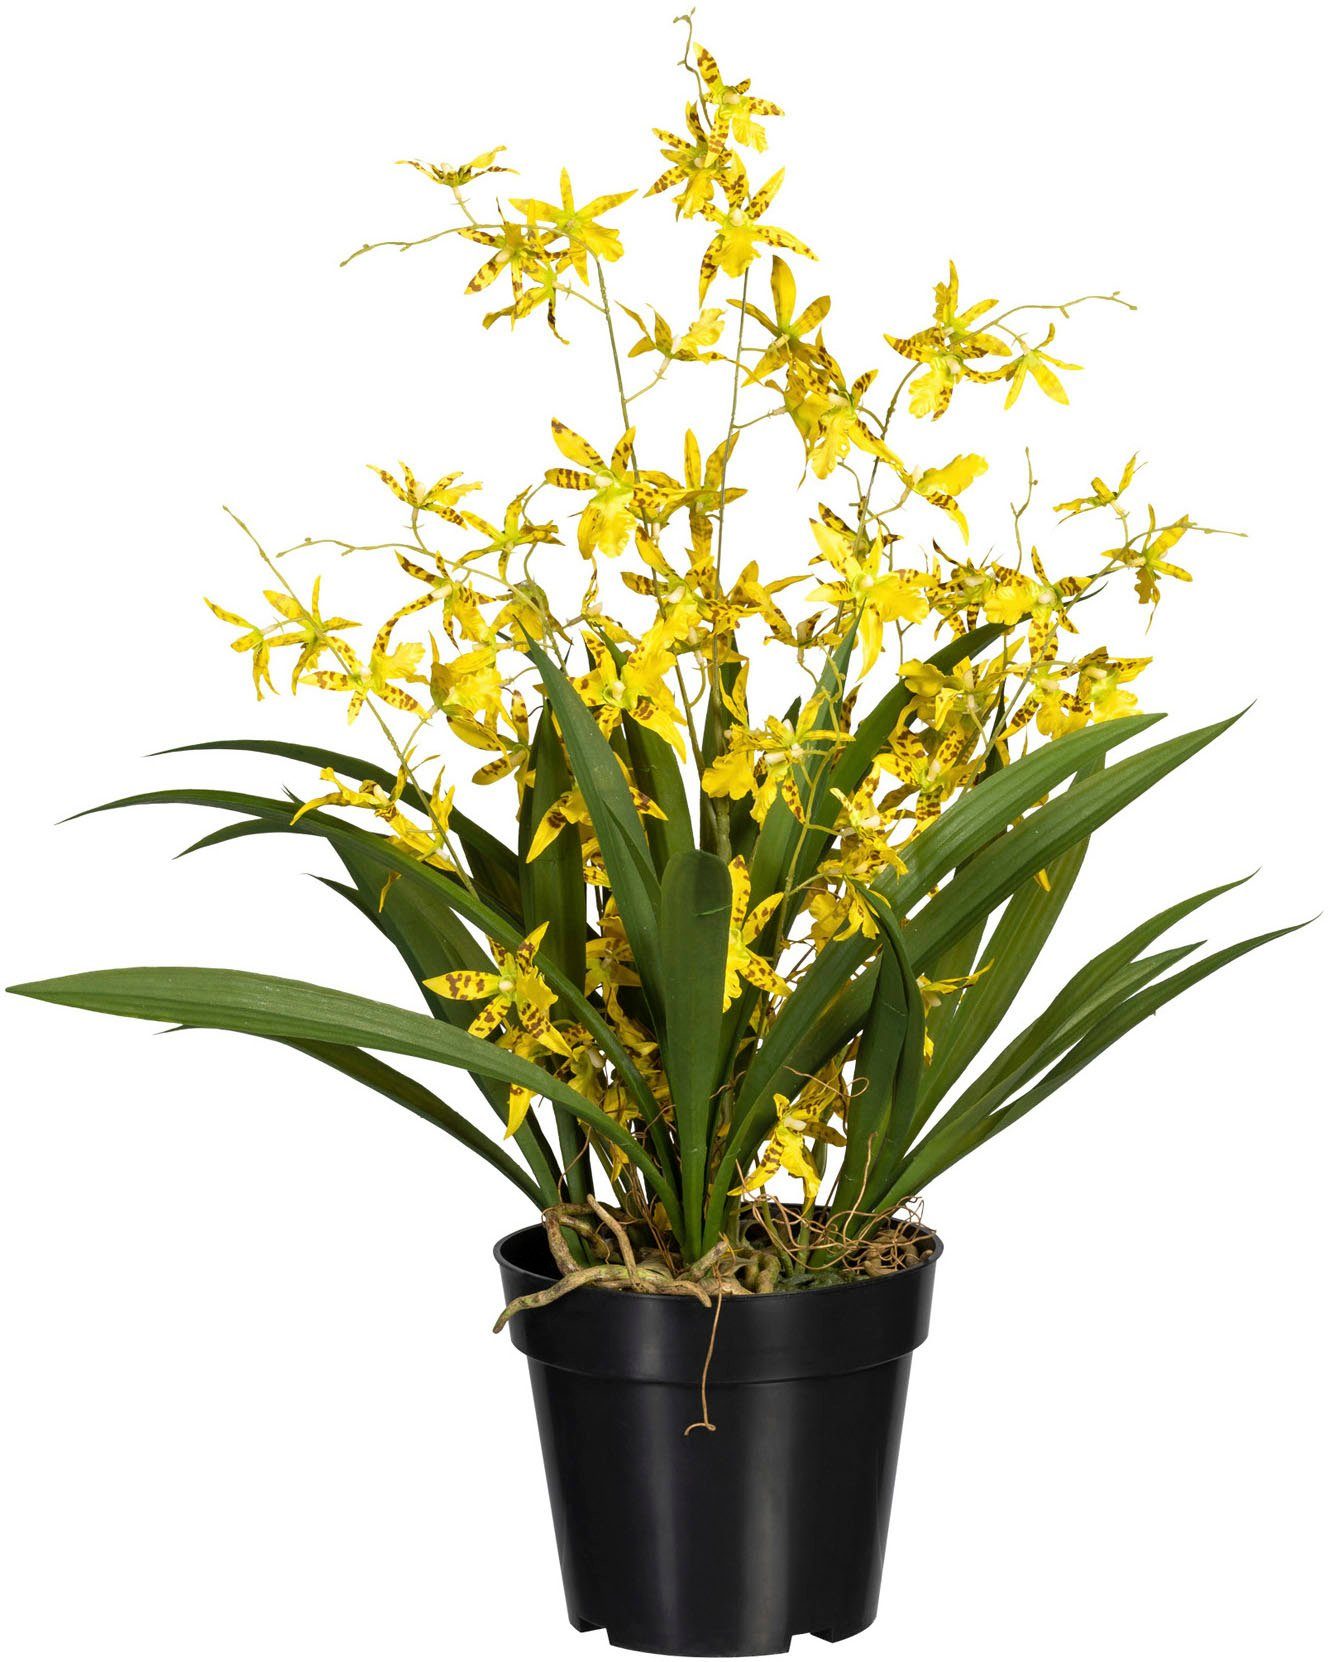 Kunstorchidee Oncidie Dancing Queen Orchidee Oncidie, Creativ green, Höhe 60 cm gelb | Kunstorchideen